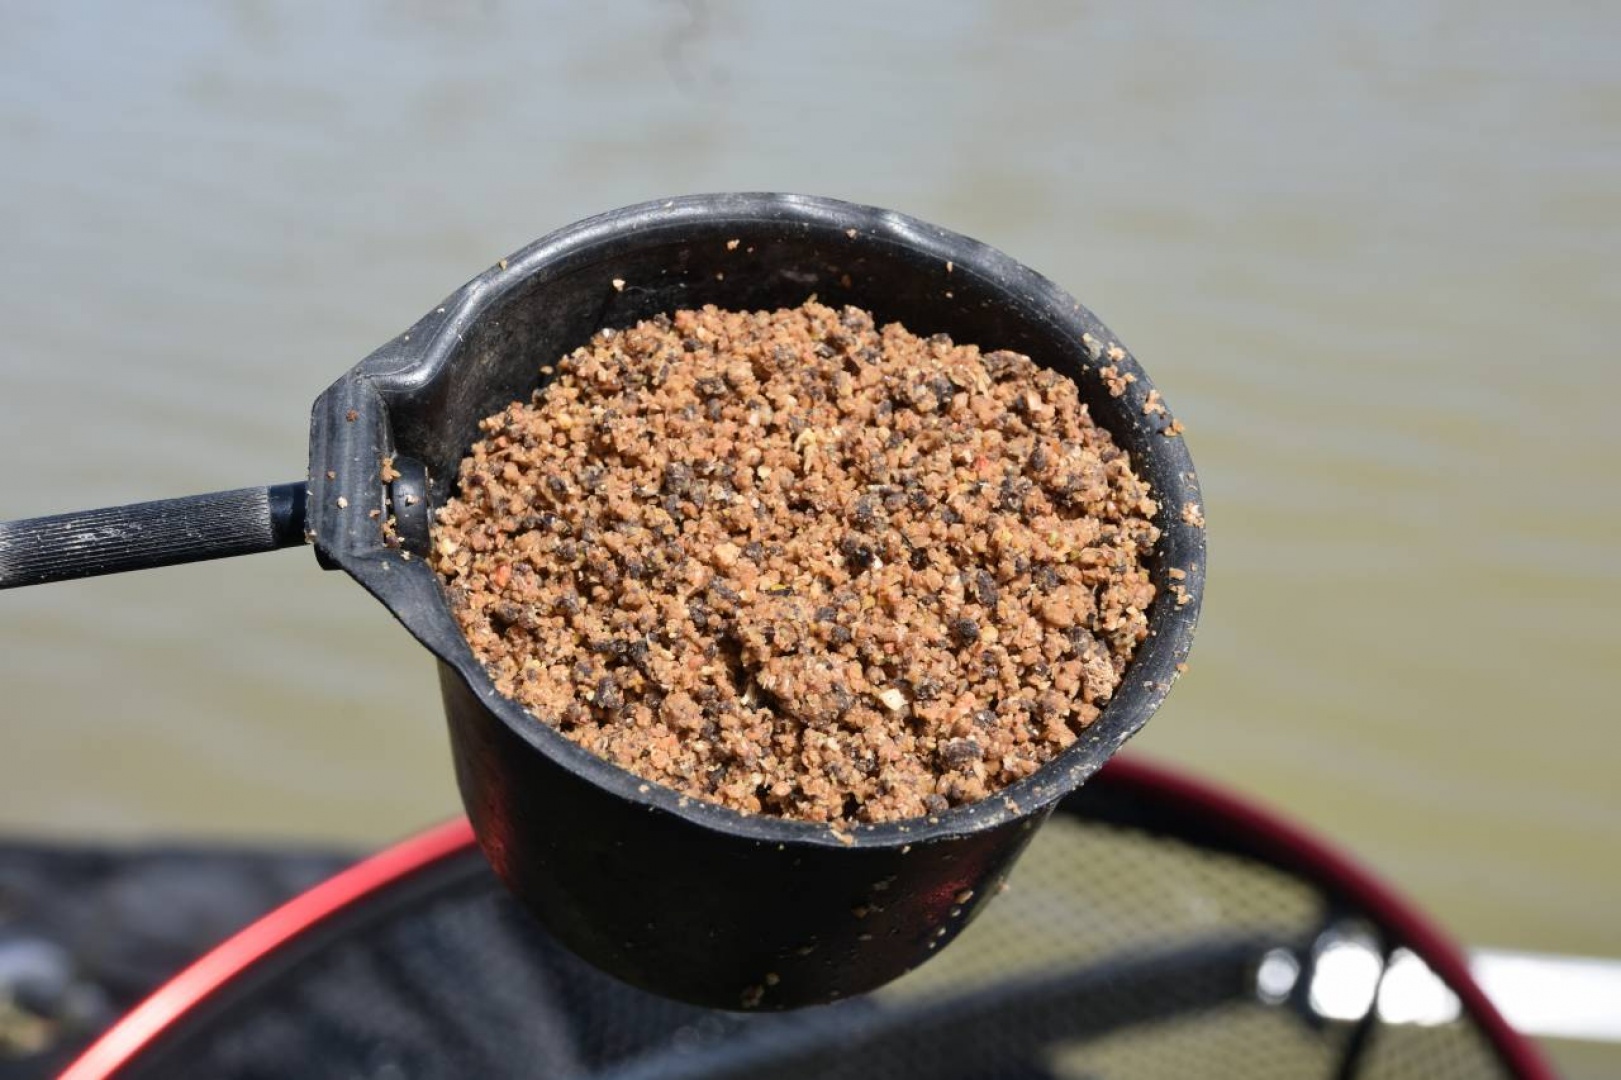 DynamiteBaits Sweet Fishmeal Groundbait - Marine Halibut 